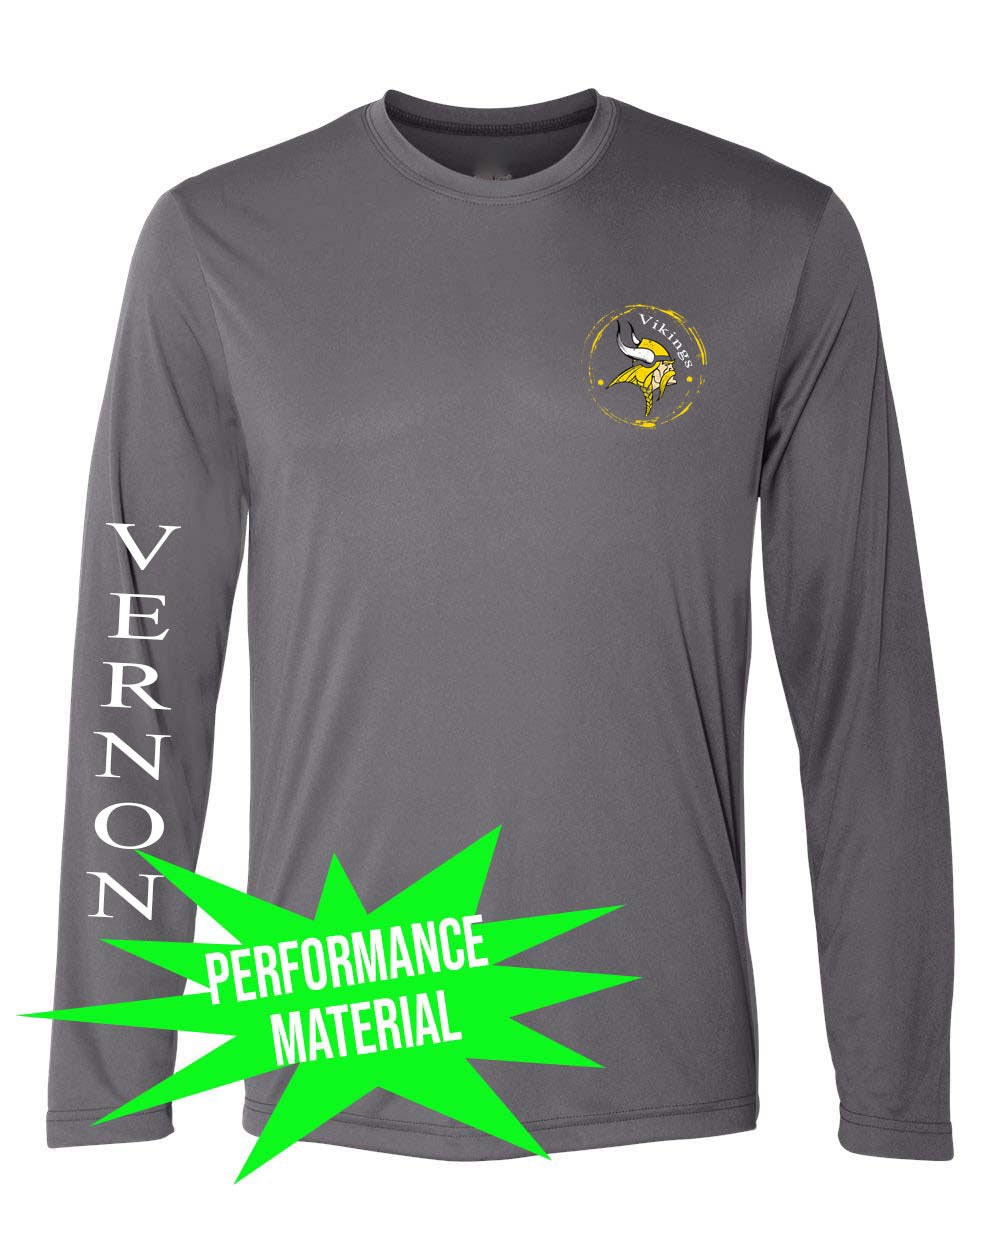 Glen Meadow Performance Material Long Sleeve Shirt Design 3